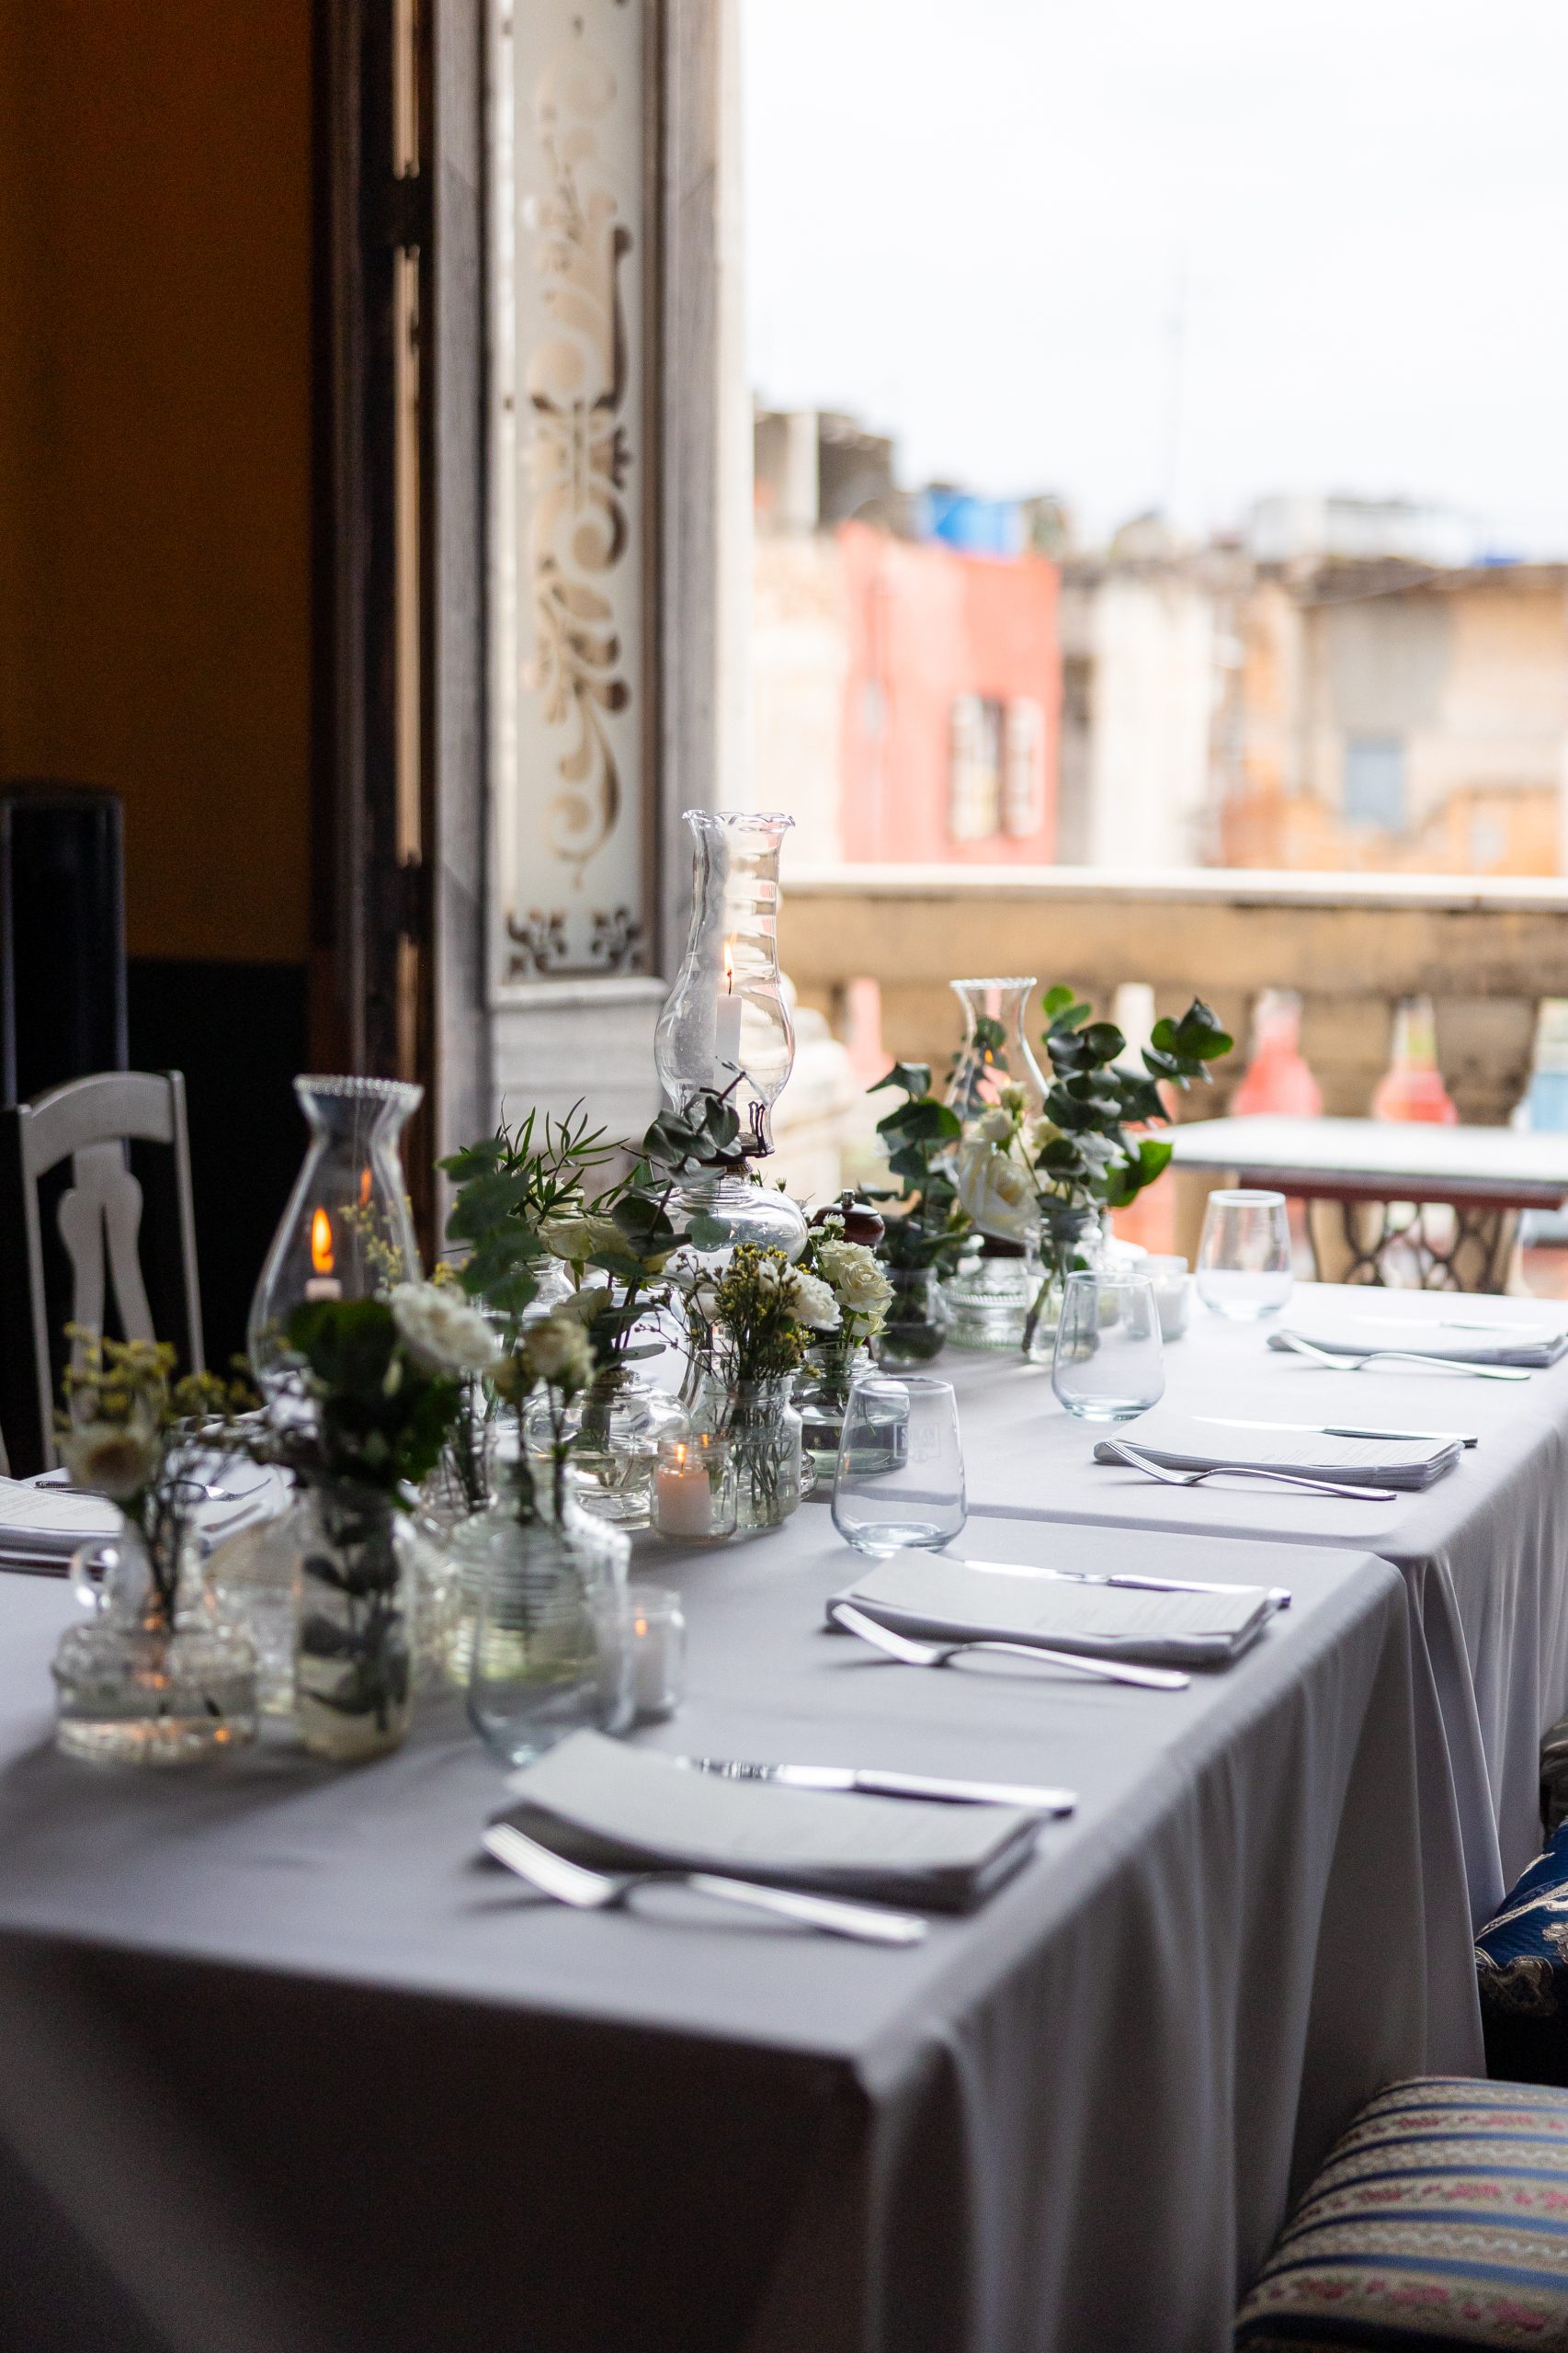 Detalhes da mesa-posta para recepção de convidados no casamento | Foto: Marcel Kriegl Fotografia